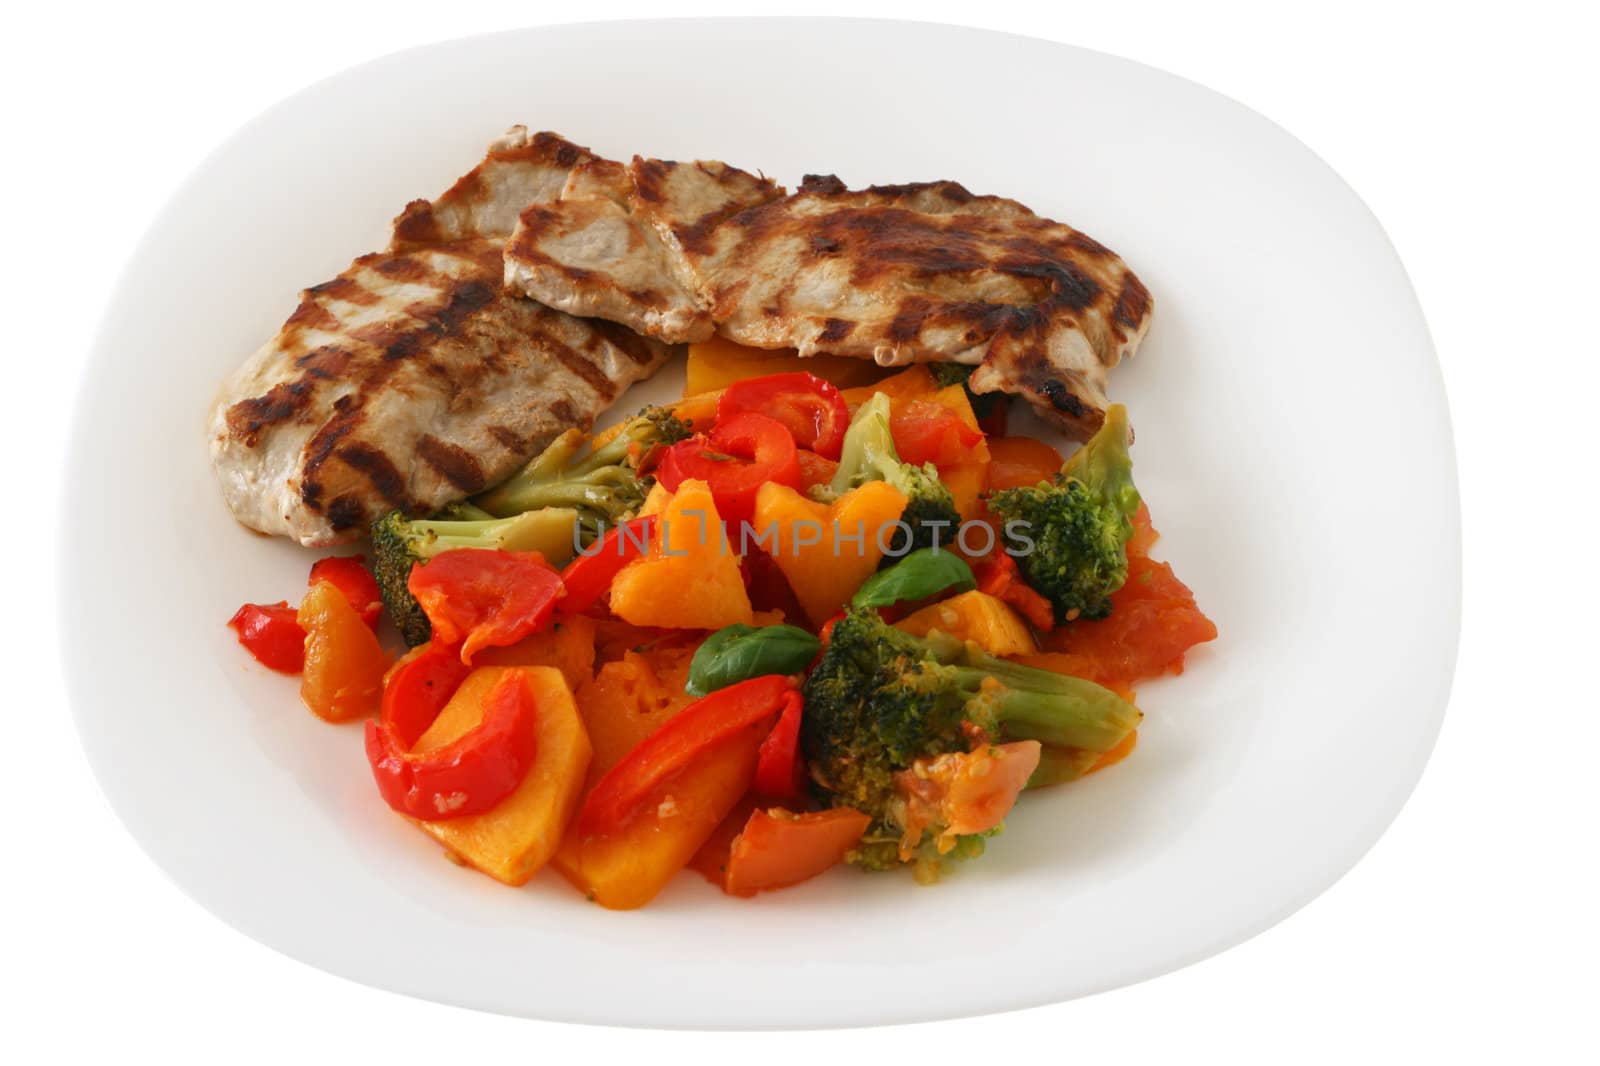 Grilled pork with vegetables